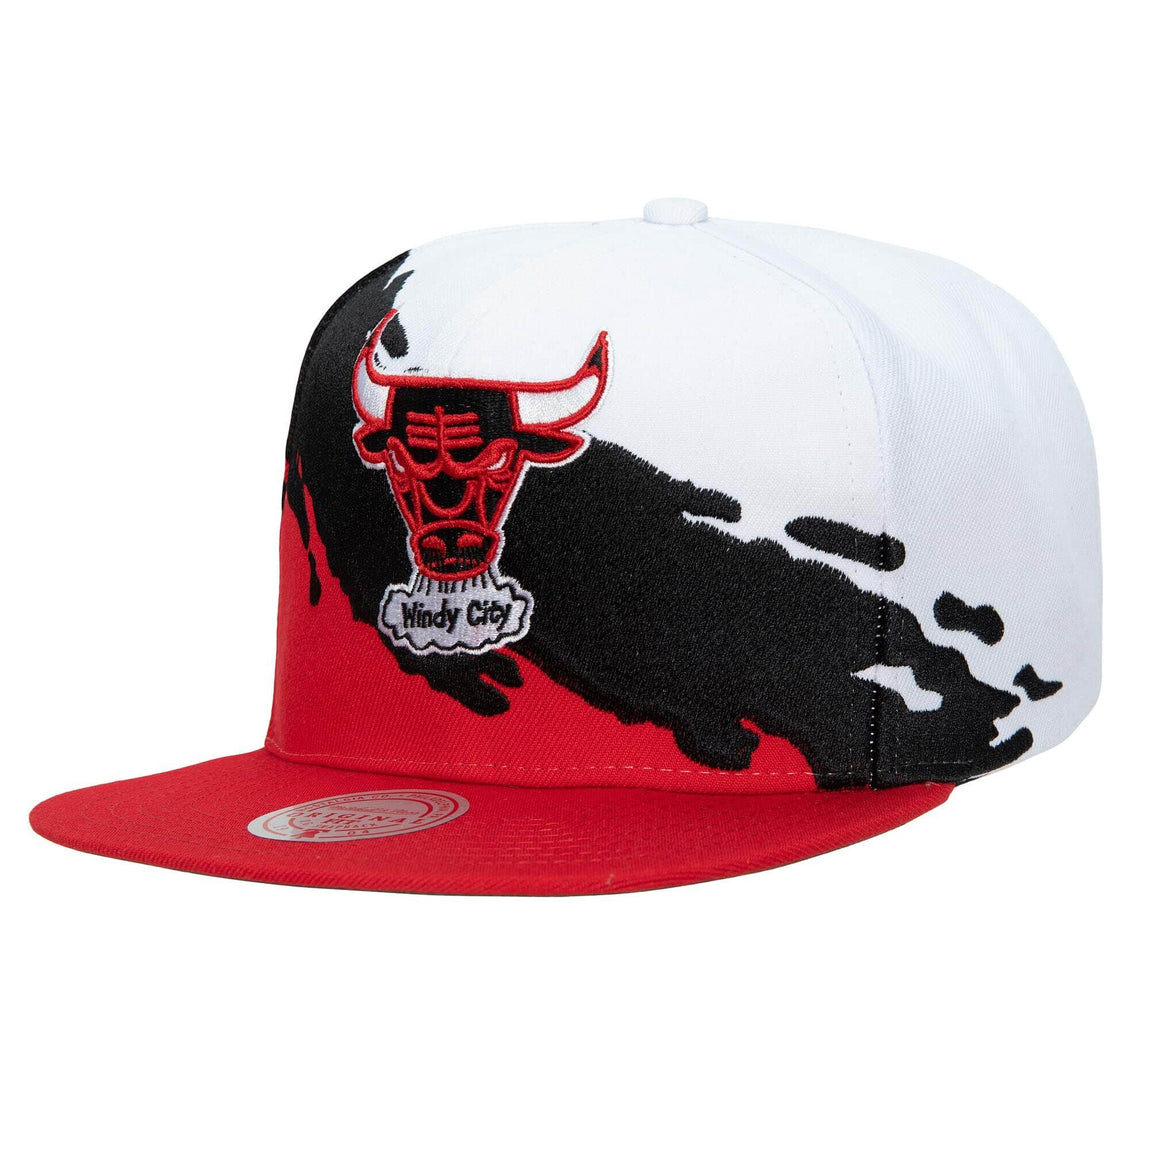 Mitchell & Ness Chicago Bulls NBA Paintbrush Snapback Hat (White/Red) - Mitchell & Ness Chicago Bulls NBA Paintbrush Snapback Hat (White/Red) - 